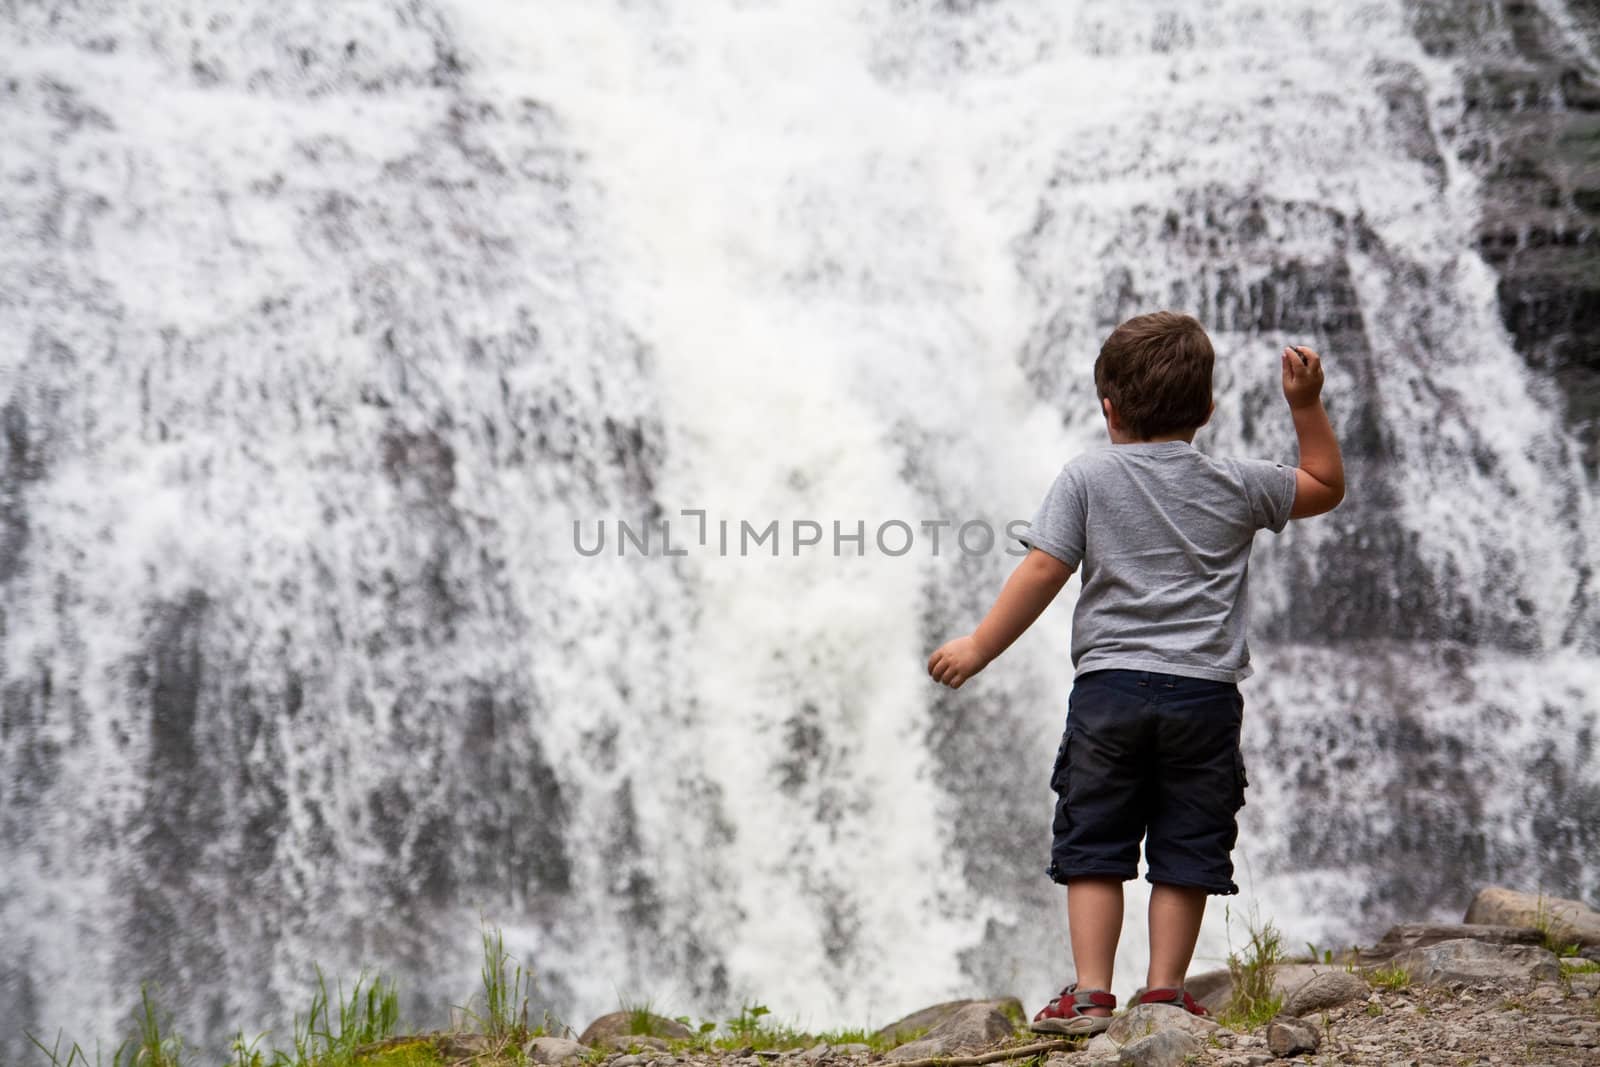 Little boy throwing rocks in a waterfall